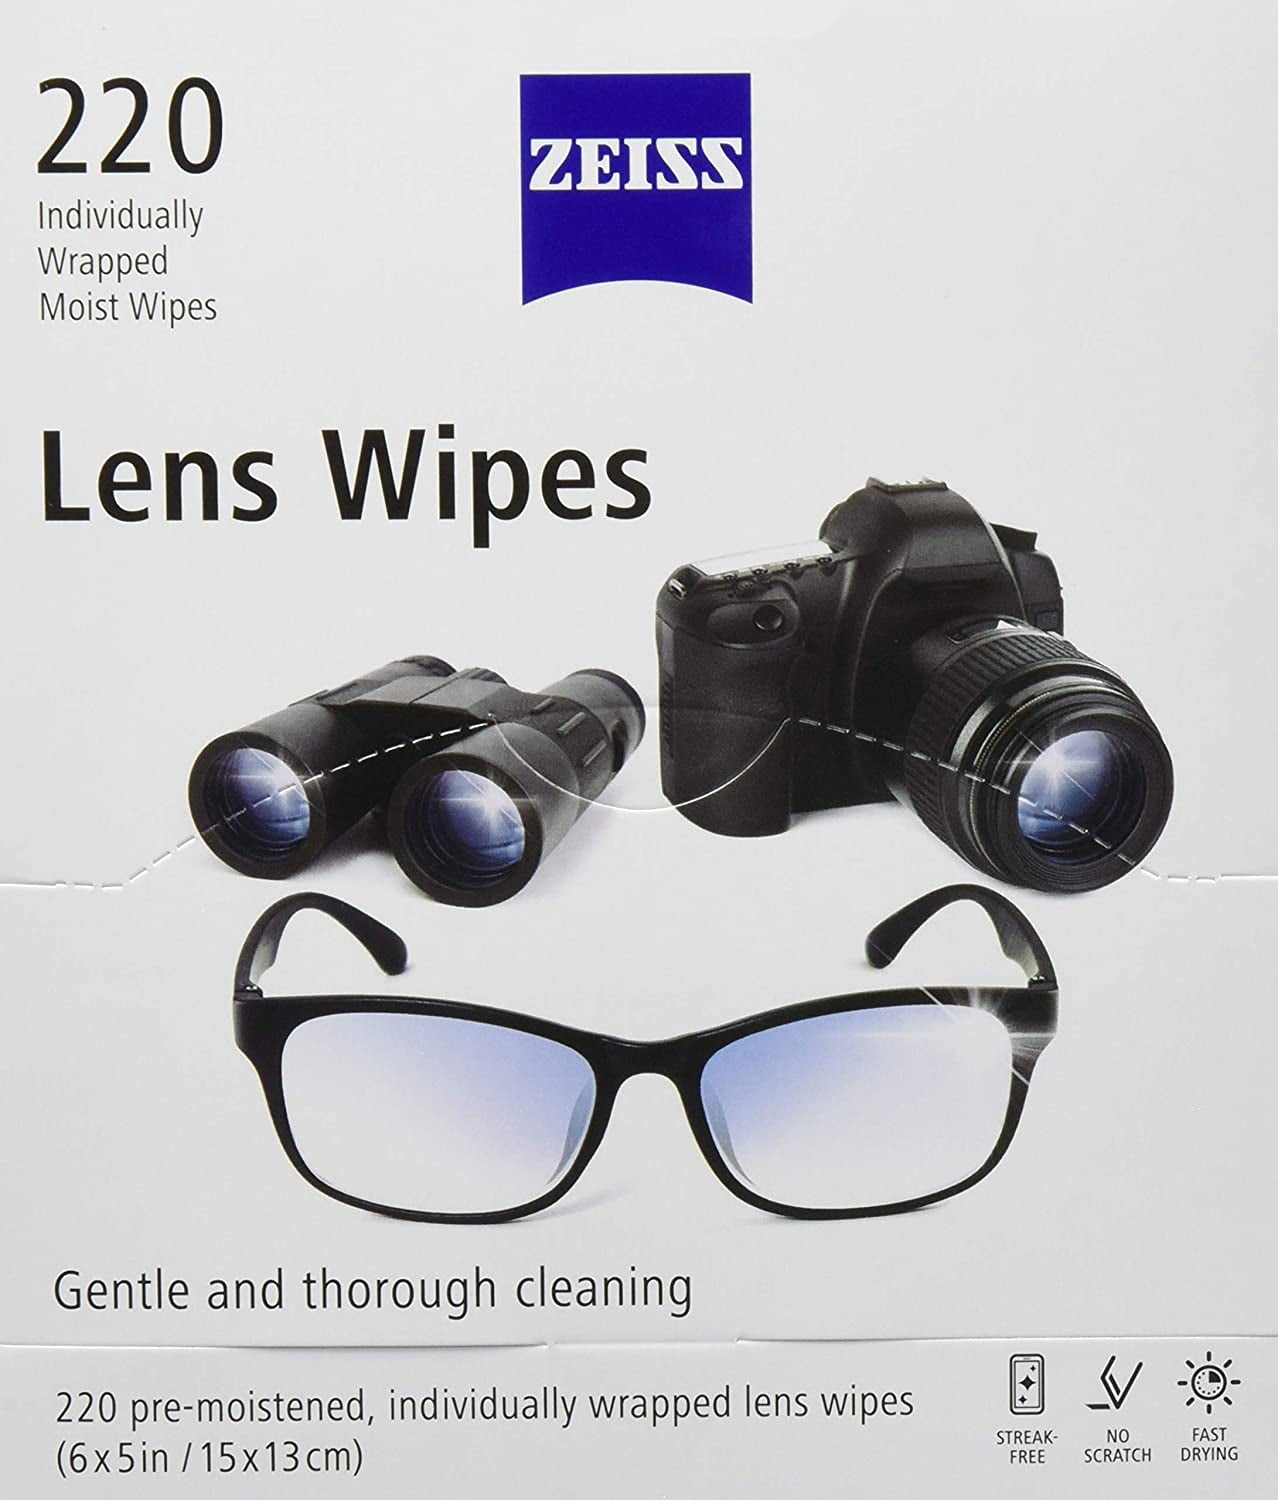 ZEISS Eye Glass Anti-Fog Wipes, Pre-Moistened Lens Cleaner Wipes